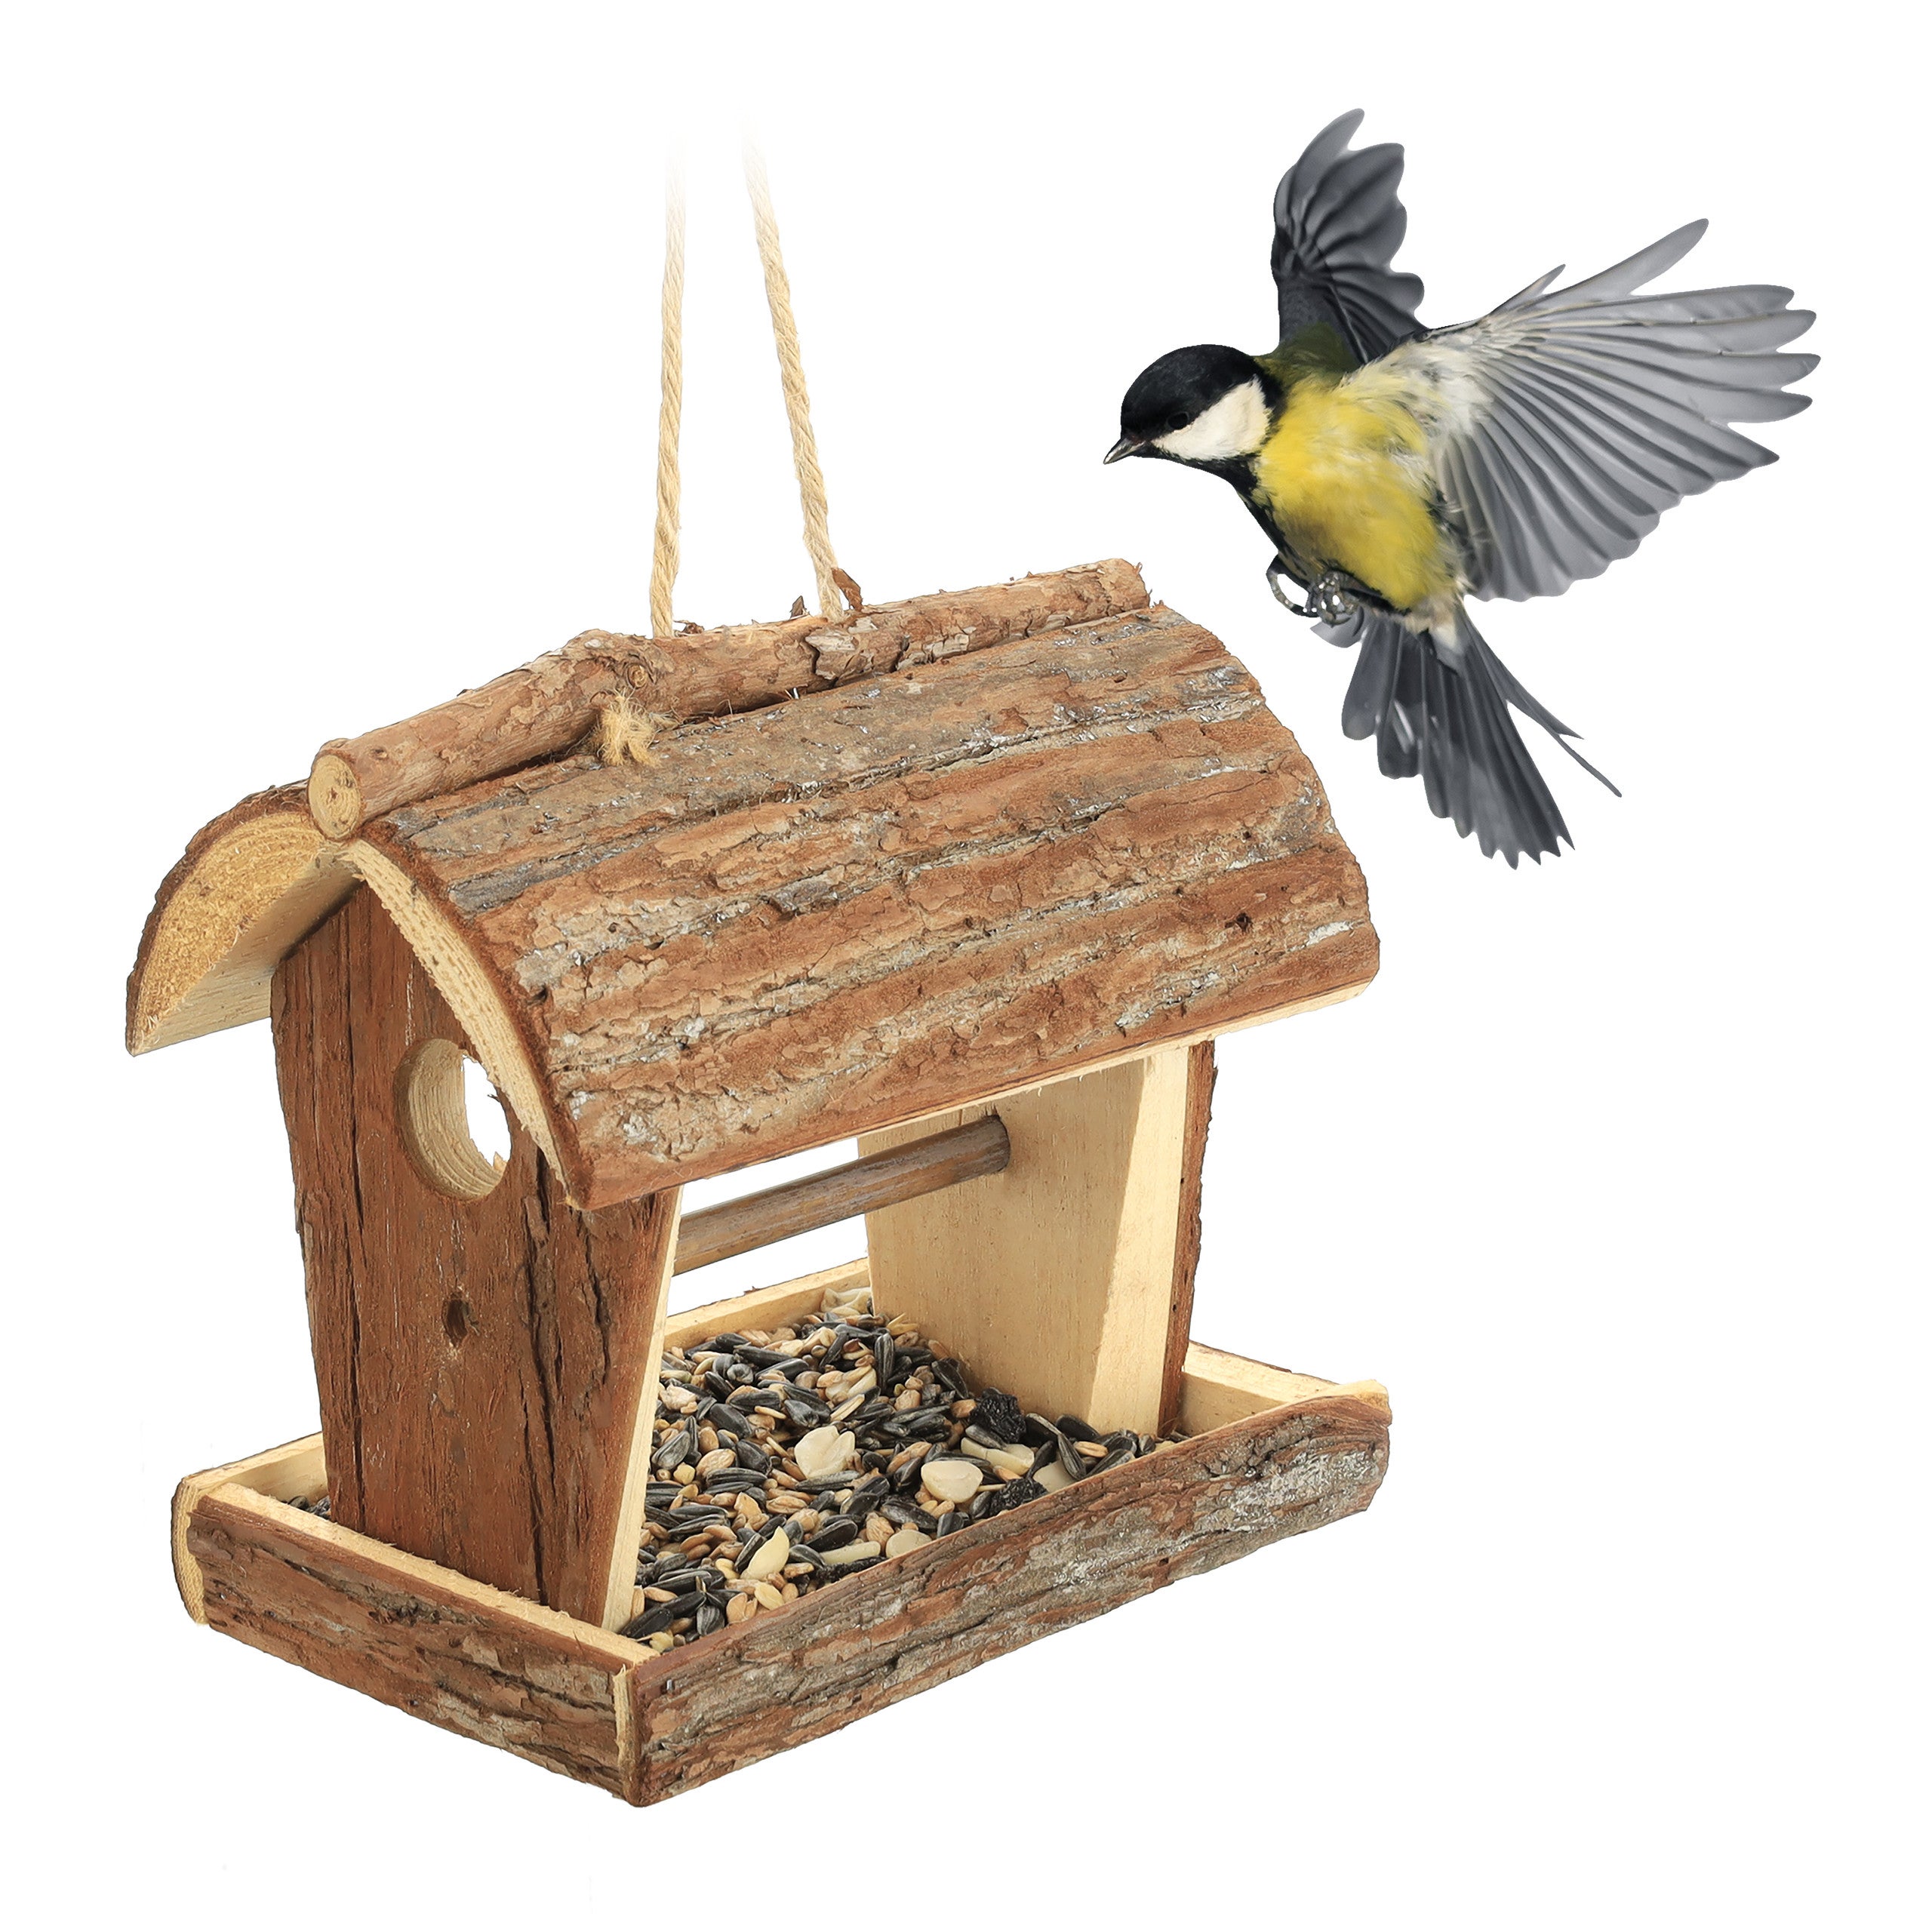 Relaxdays Mangeoire à oiseaux, en bois, avec écorce et mousse, à suspendre,  H x L x P : 19 x 21 x 23 cm, nature